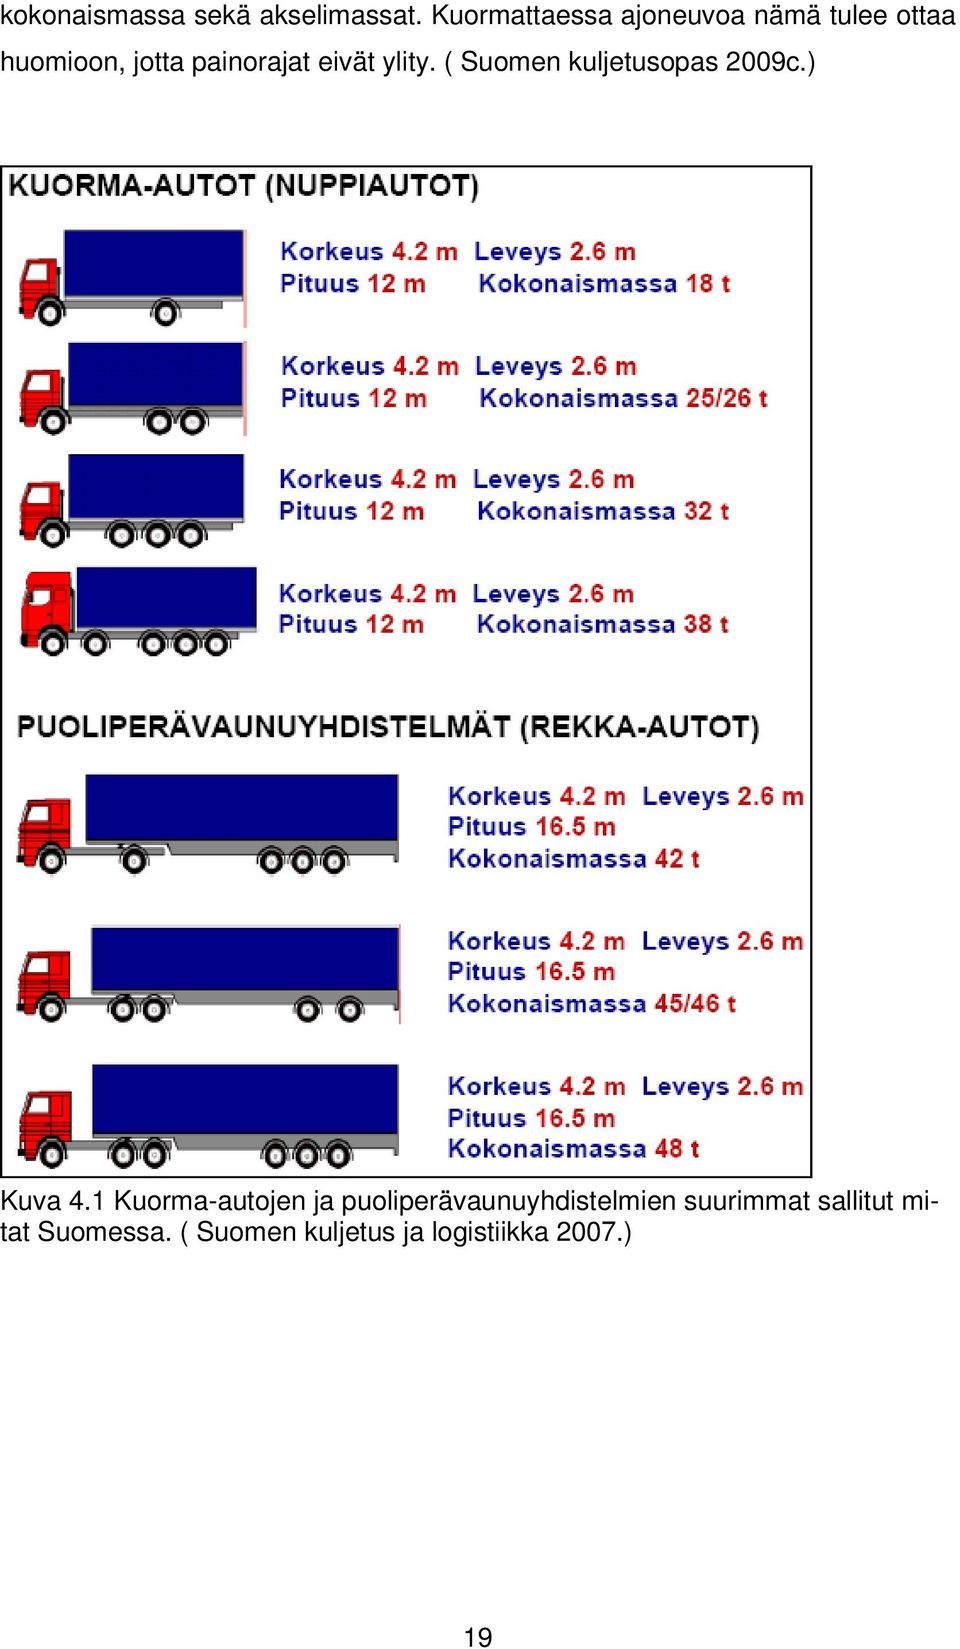 eivät ylity. ( Suomen kuljetusopas 2009c.) Kuva 4.